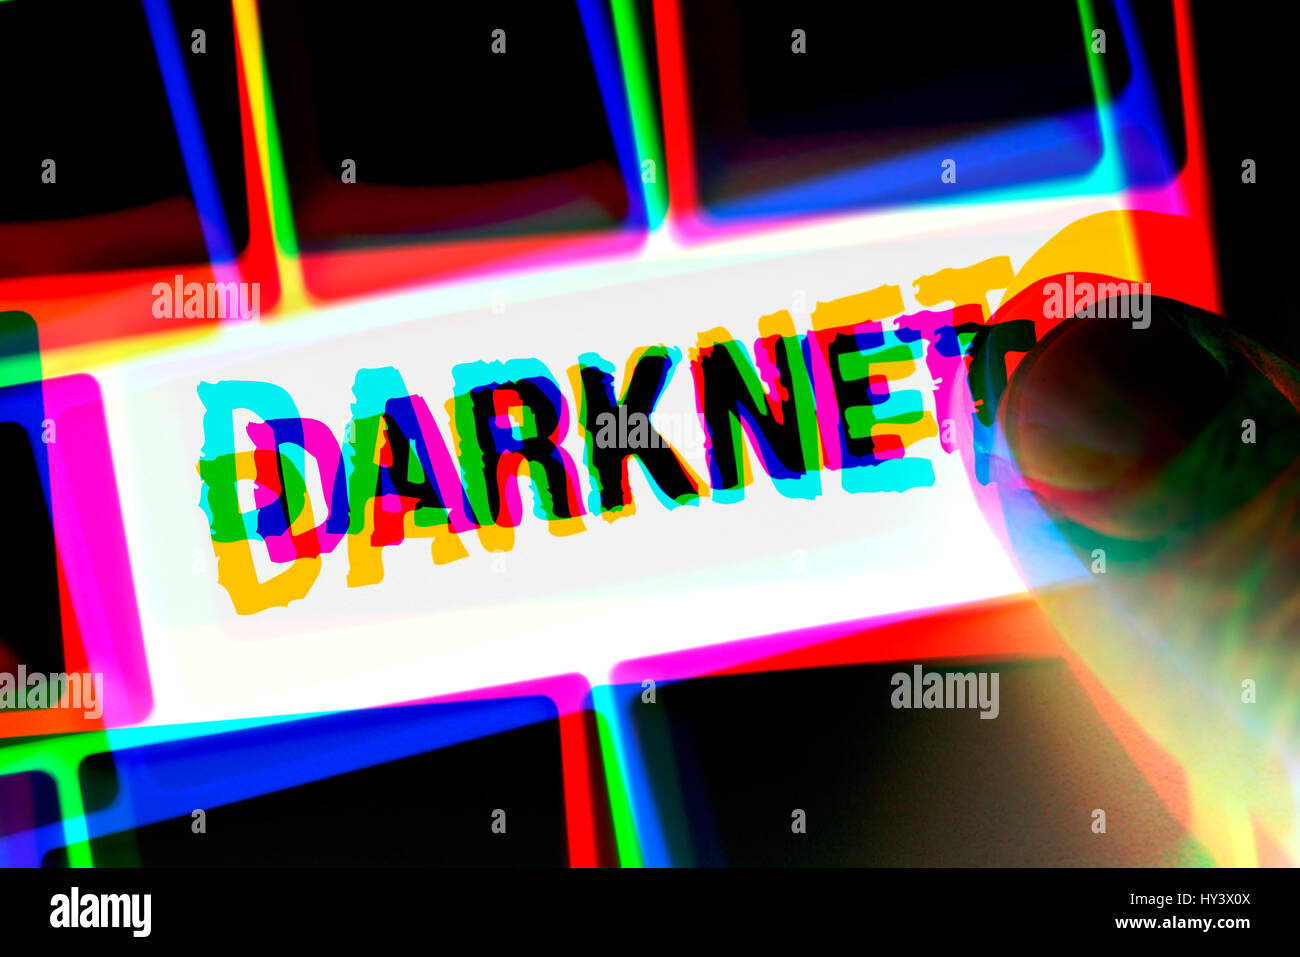 Chiave del computer con l'etichetta Darknet, Computertaste mit der Aufschrift Darknet Foto Stock